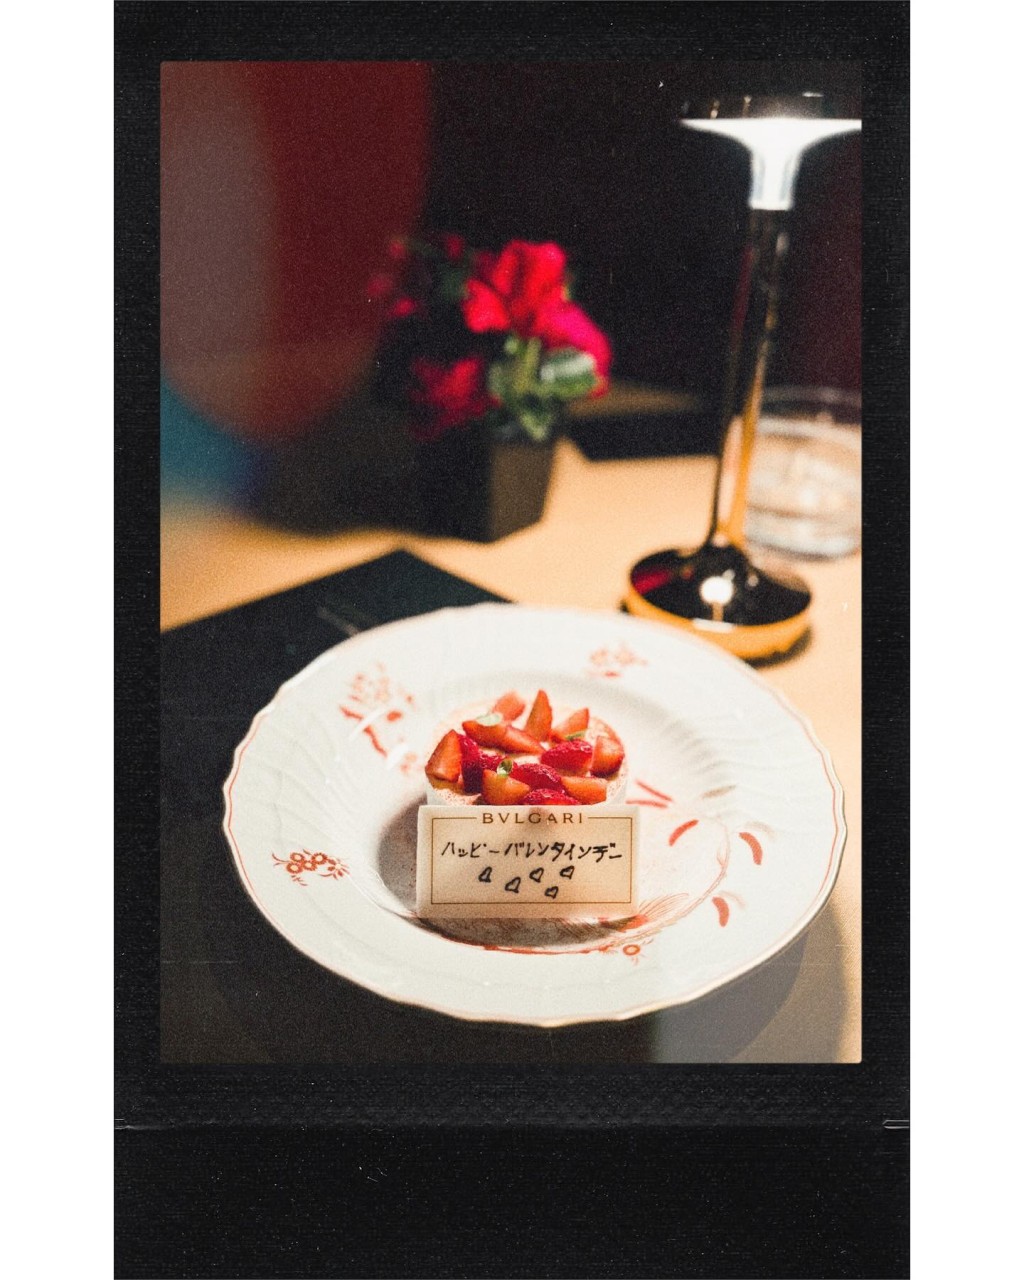 其中一件甜品更用日文寫上「情人節快樂」，可見照片是早前蔣家旻在日本歡度情人節時拍下的。